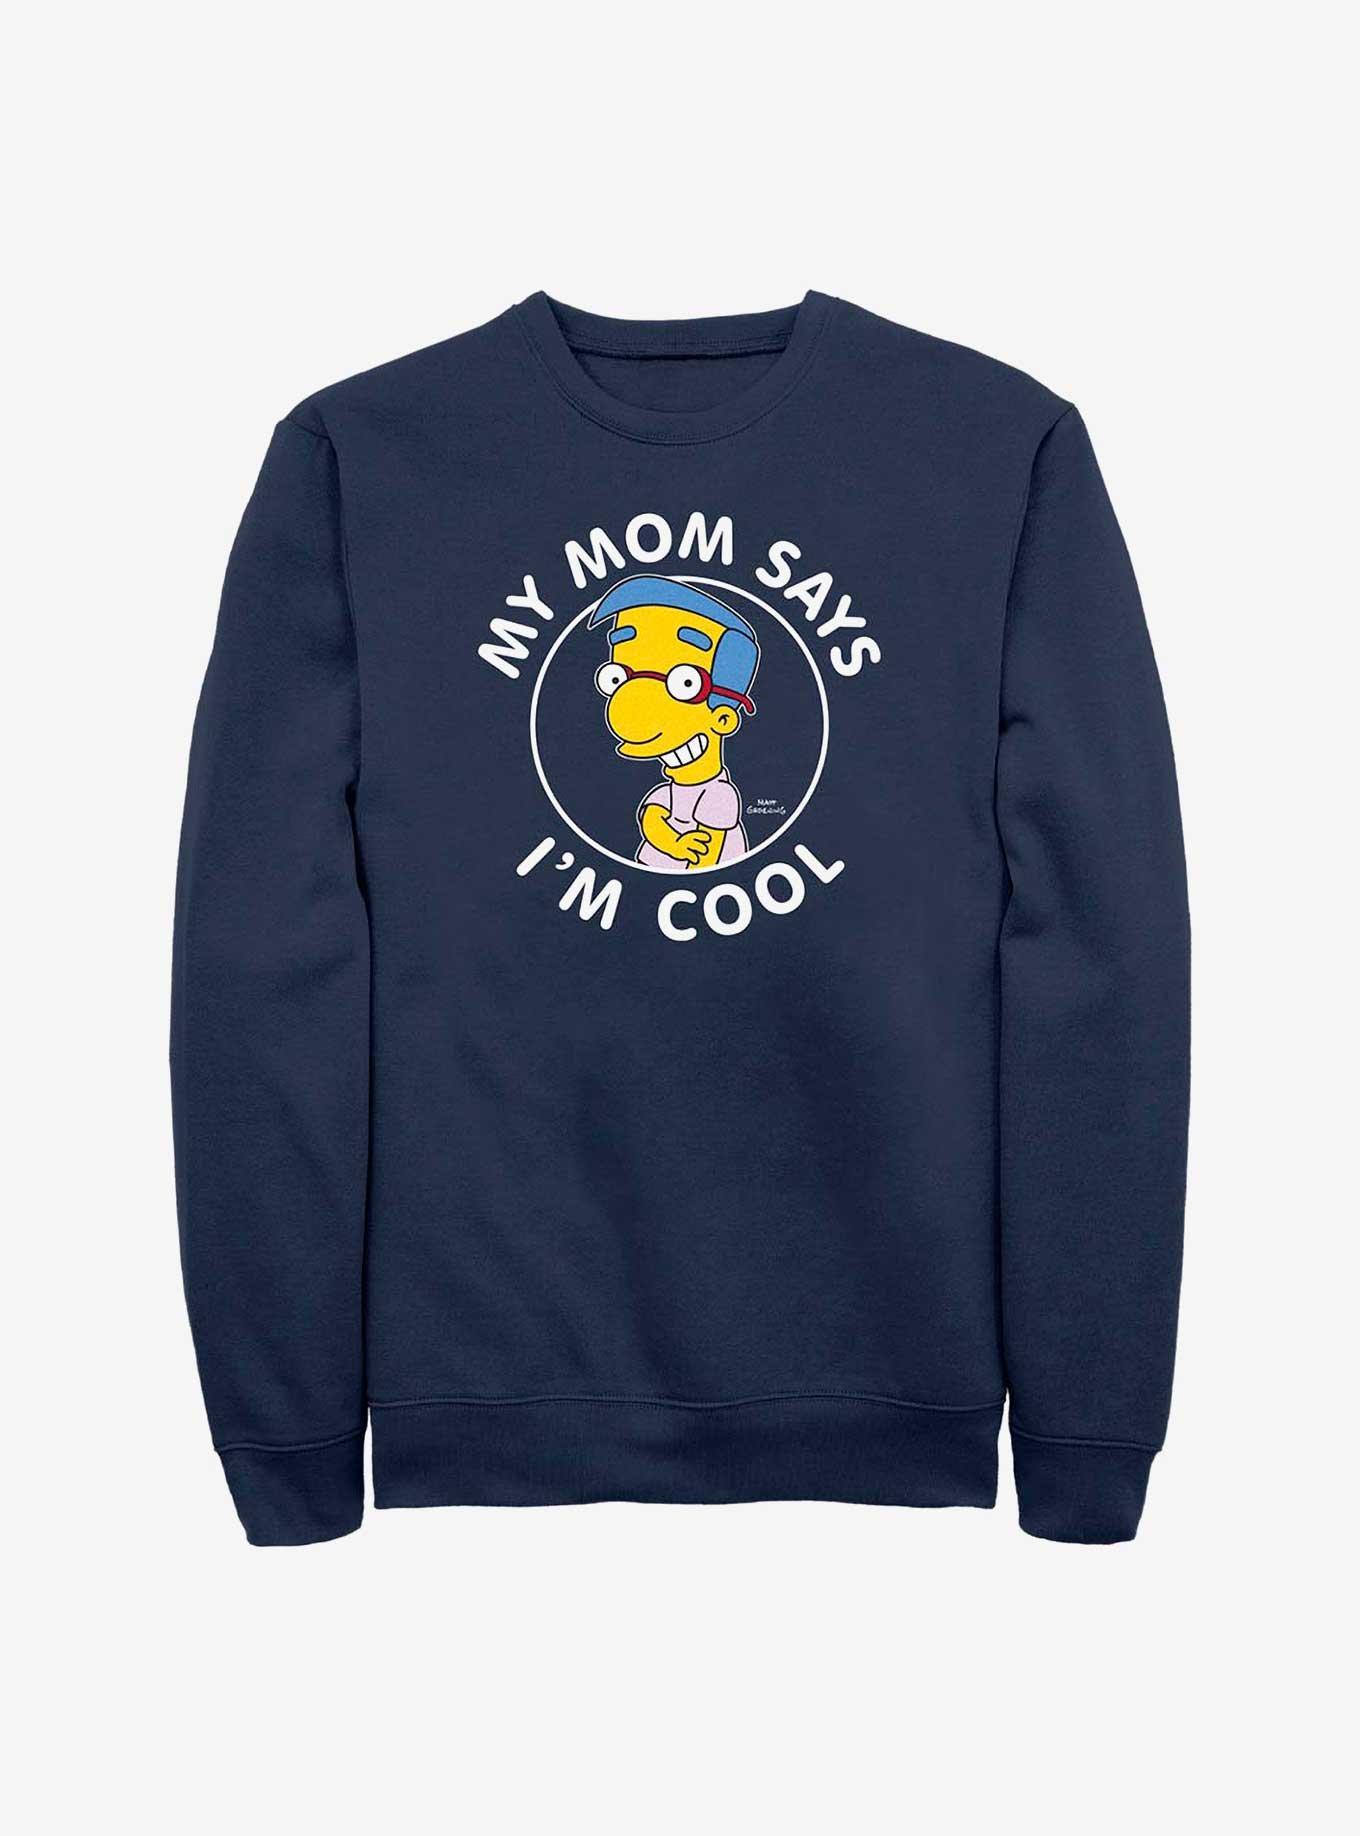 The Simpsons Milhouse Crew Sweatshirt